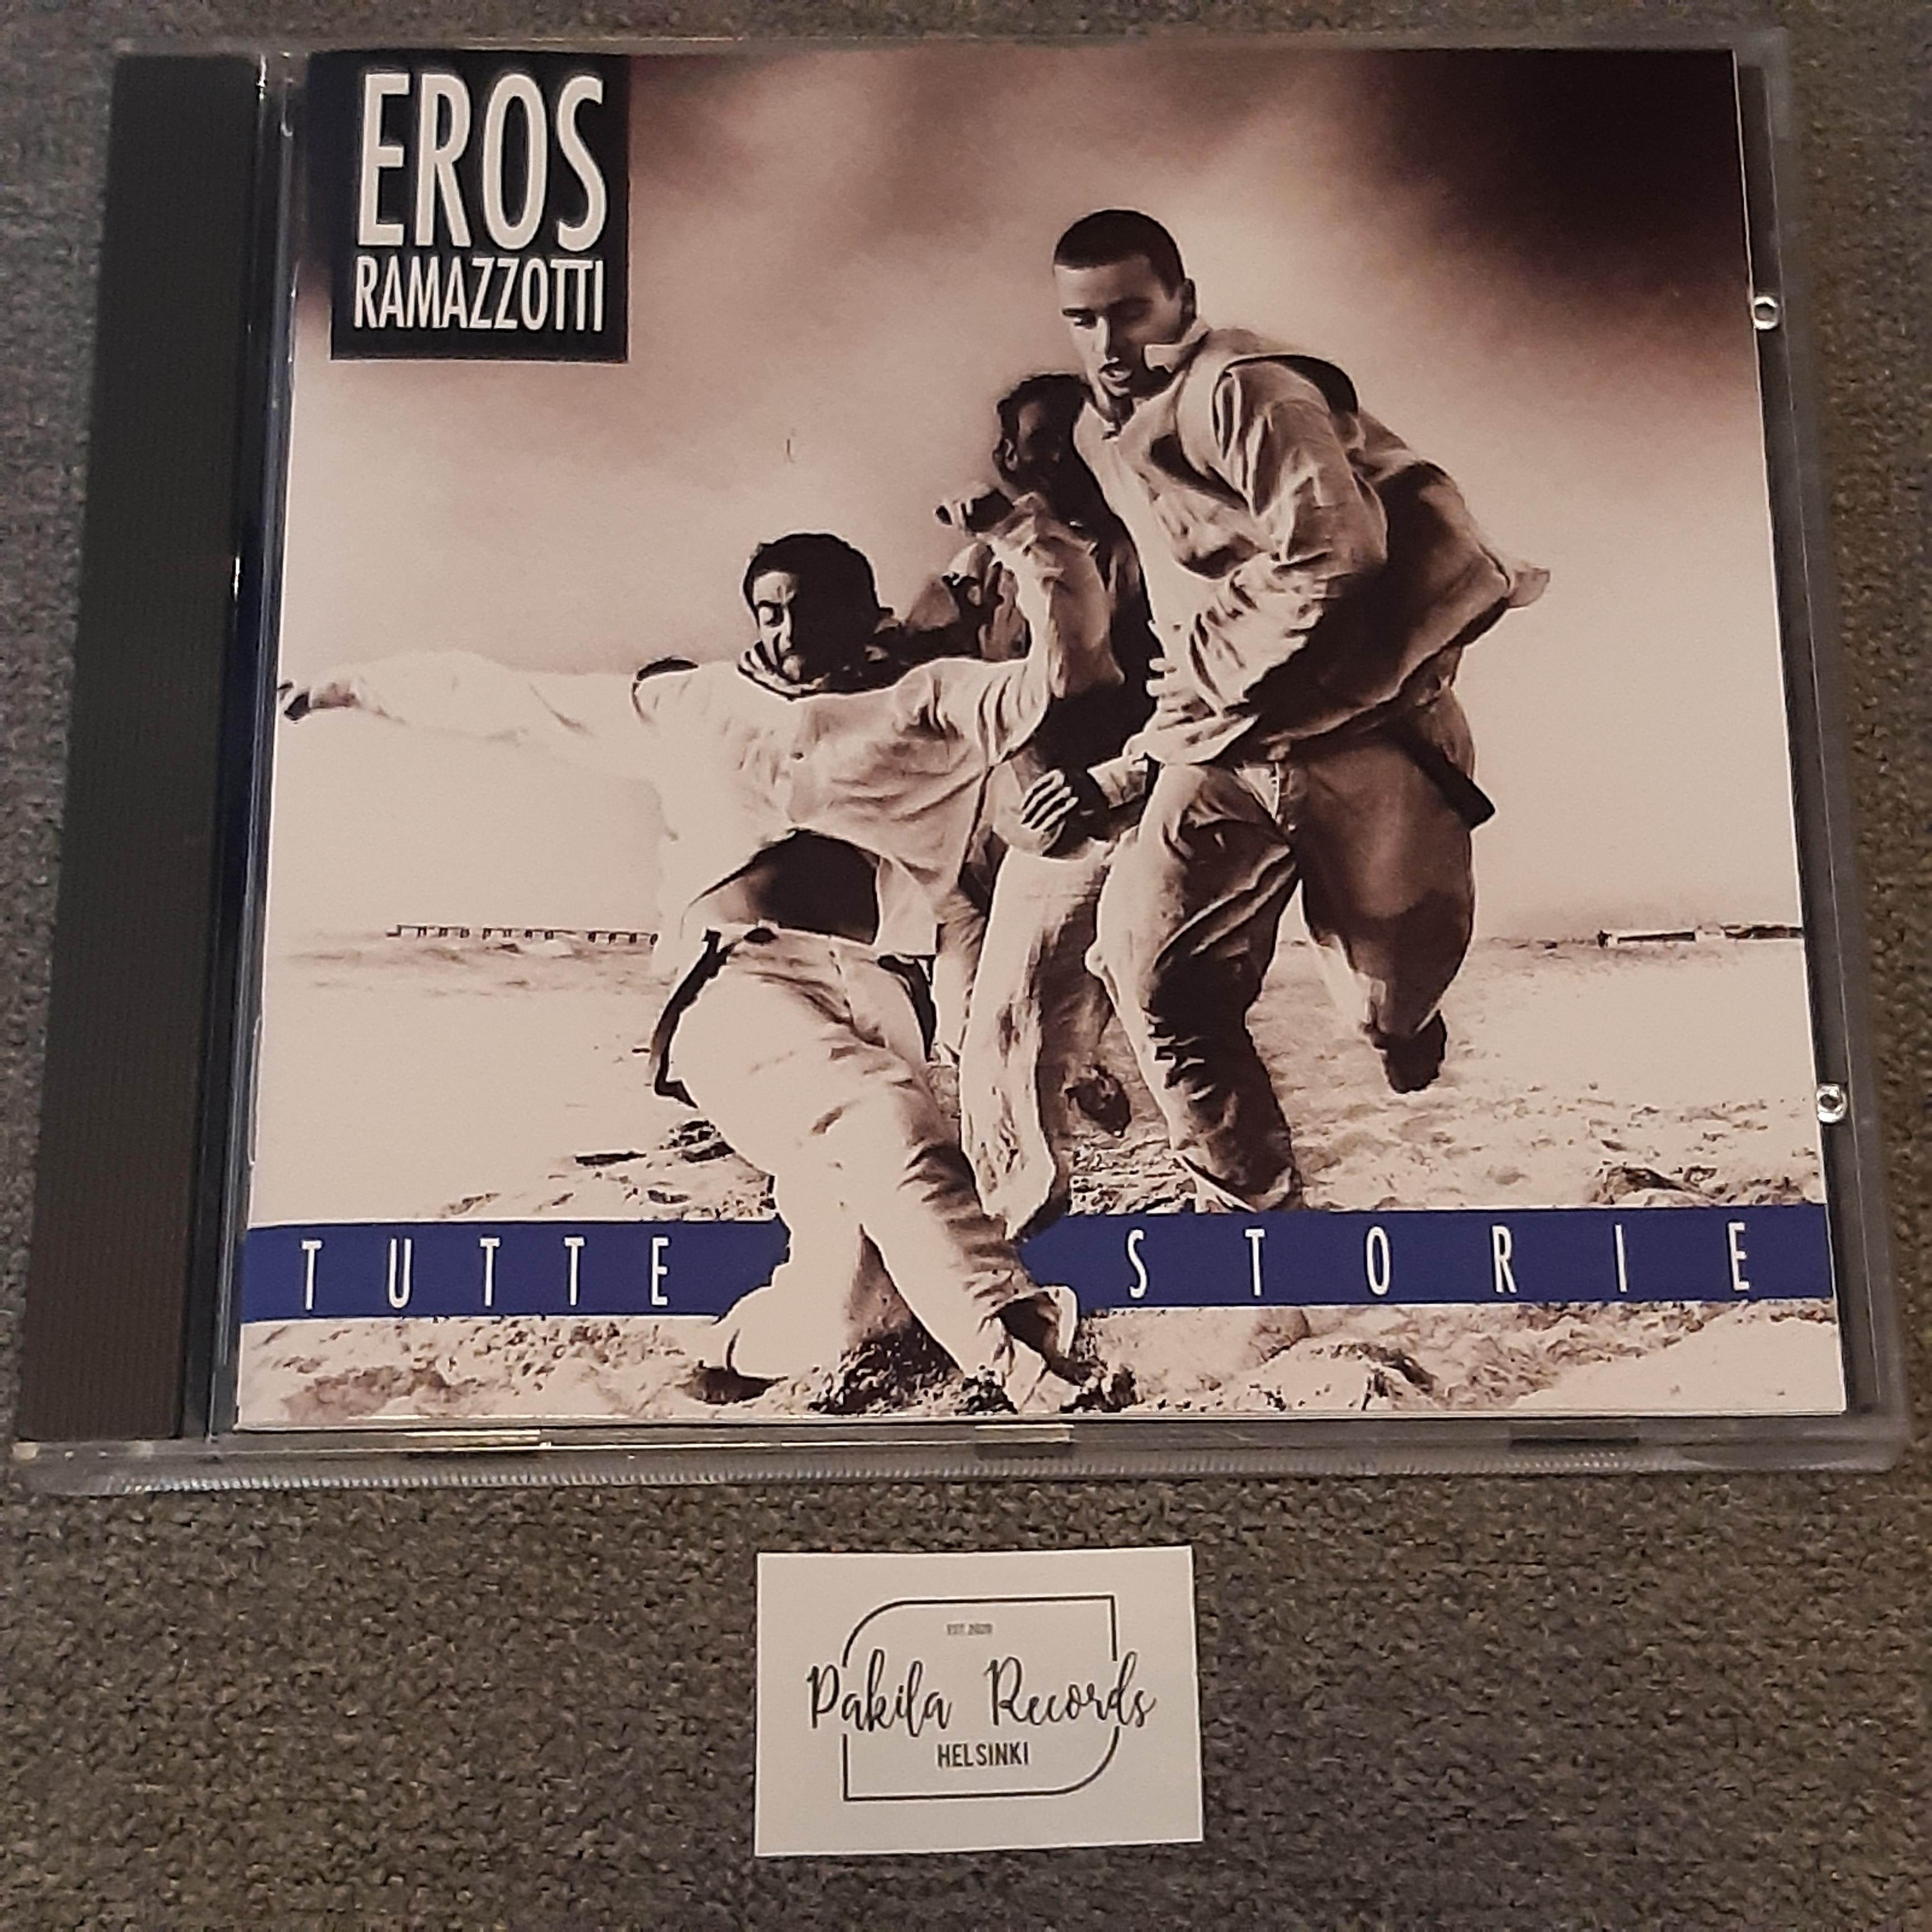 Eros Ramazzotti - Tutte Storie - CD (käytetty)